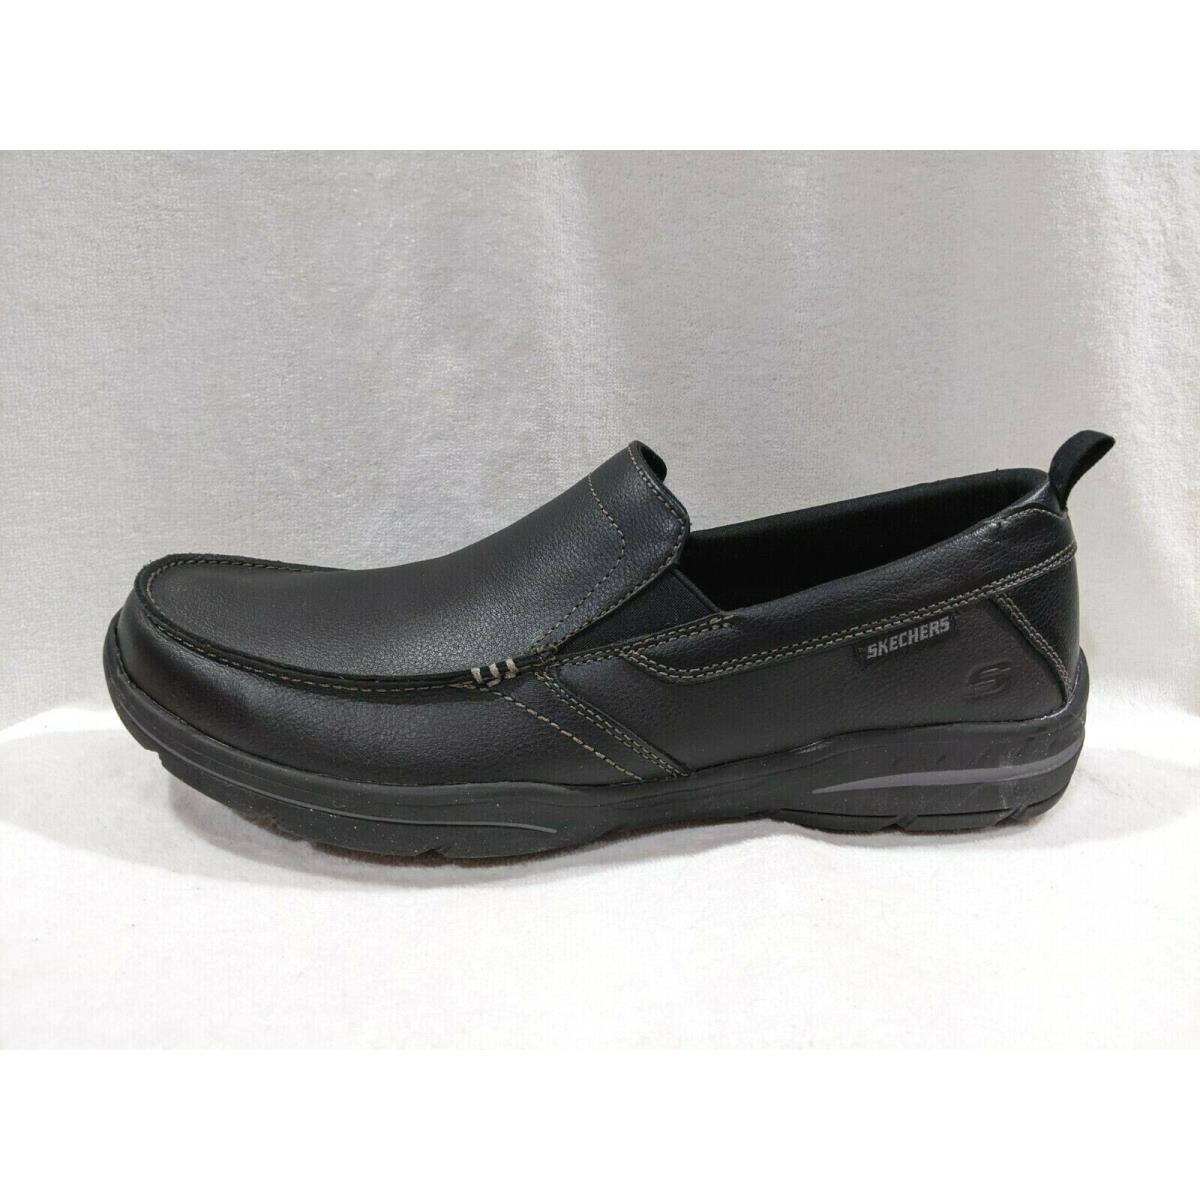 Skechers shoes Harper Forde - Black 4